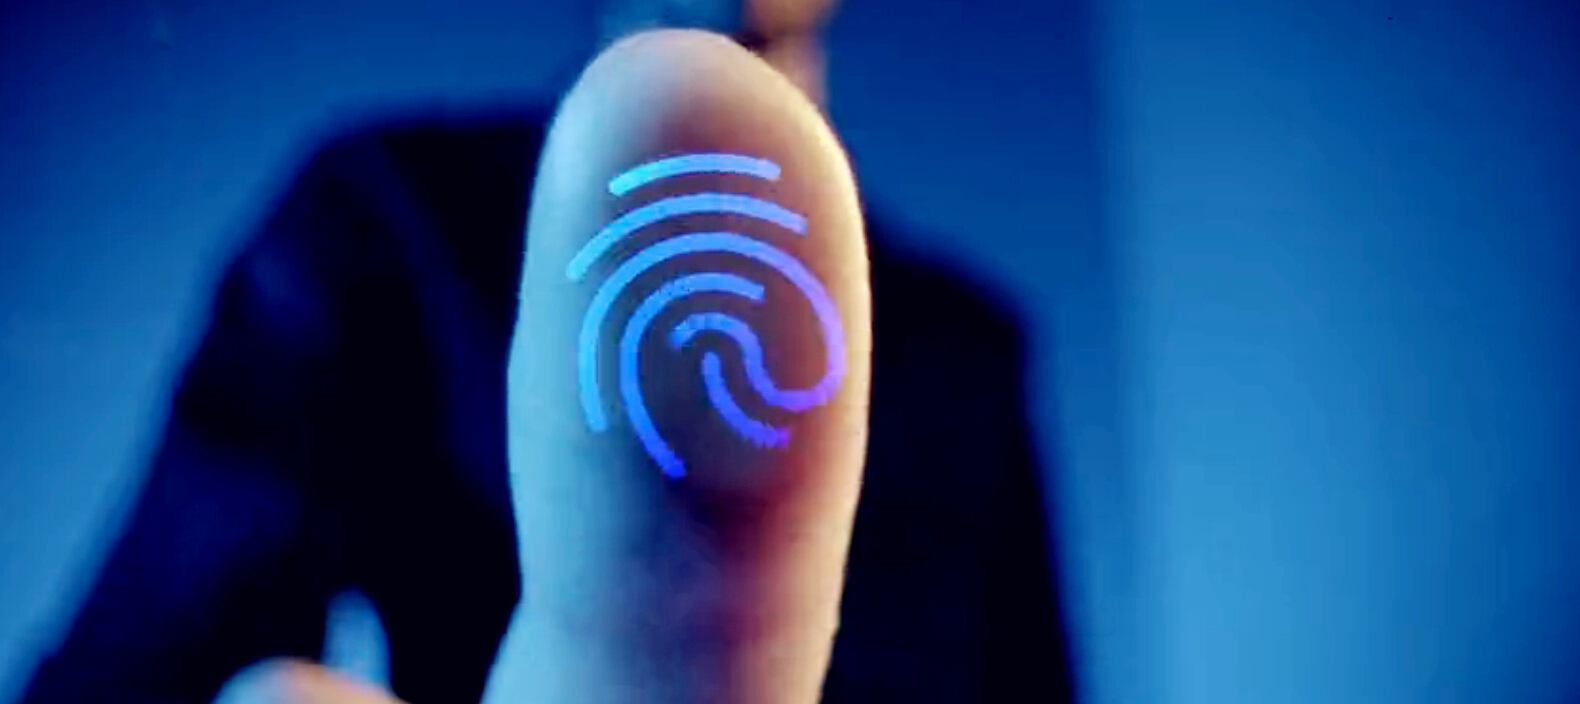 高通成这项技术为下一代超声波指纹解决方案指纹传感器,屏下指纹识别